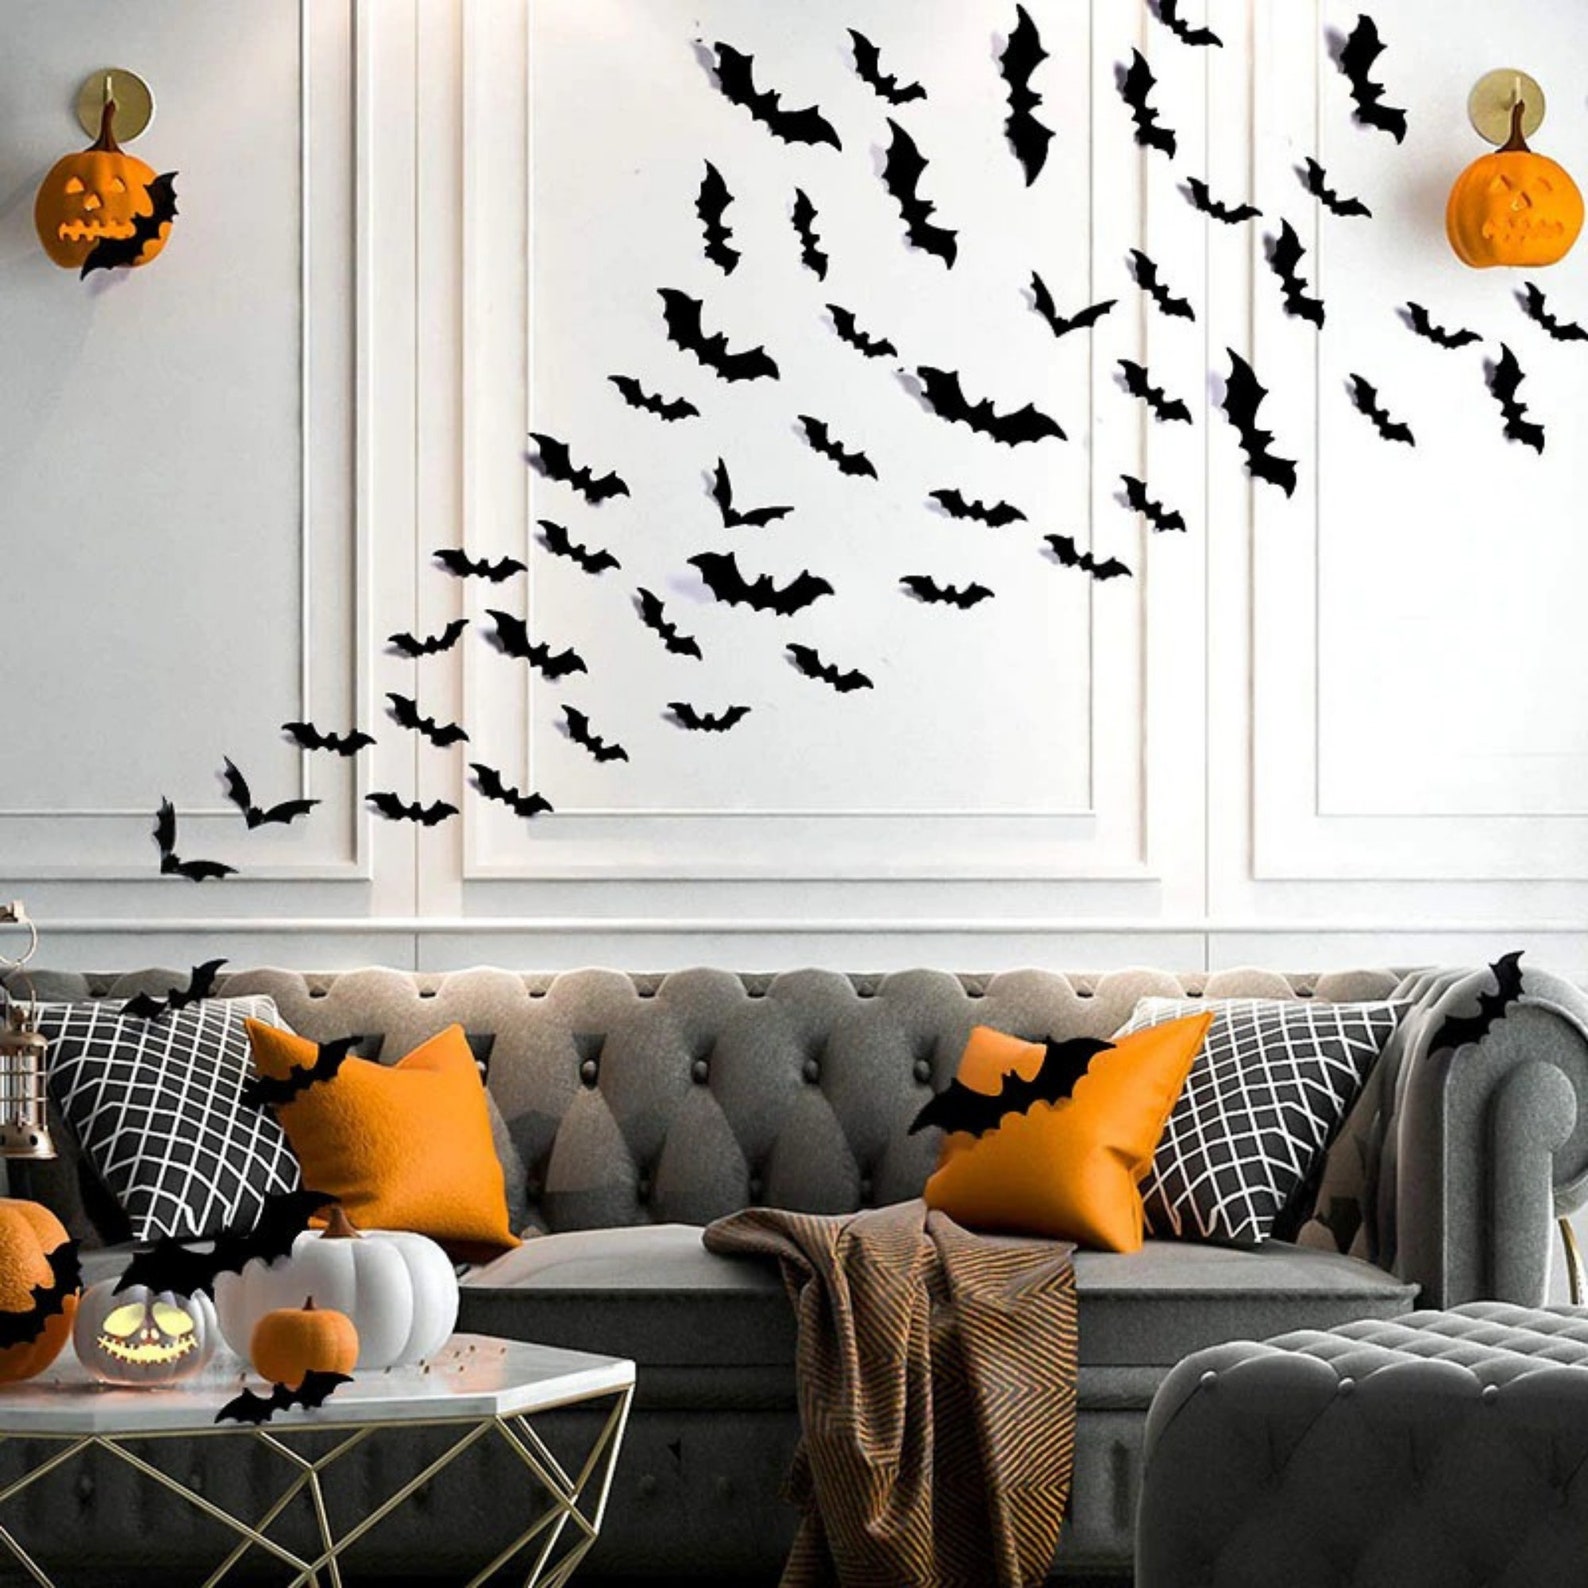 3D Bats set for Halloween decoration Vinyl pvc 4 sizes | Etsy